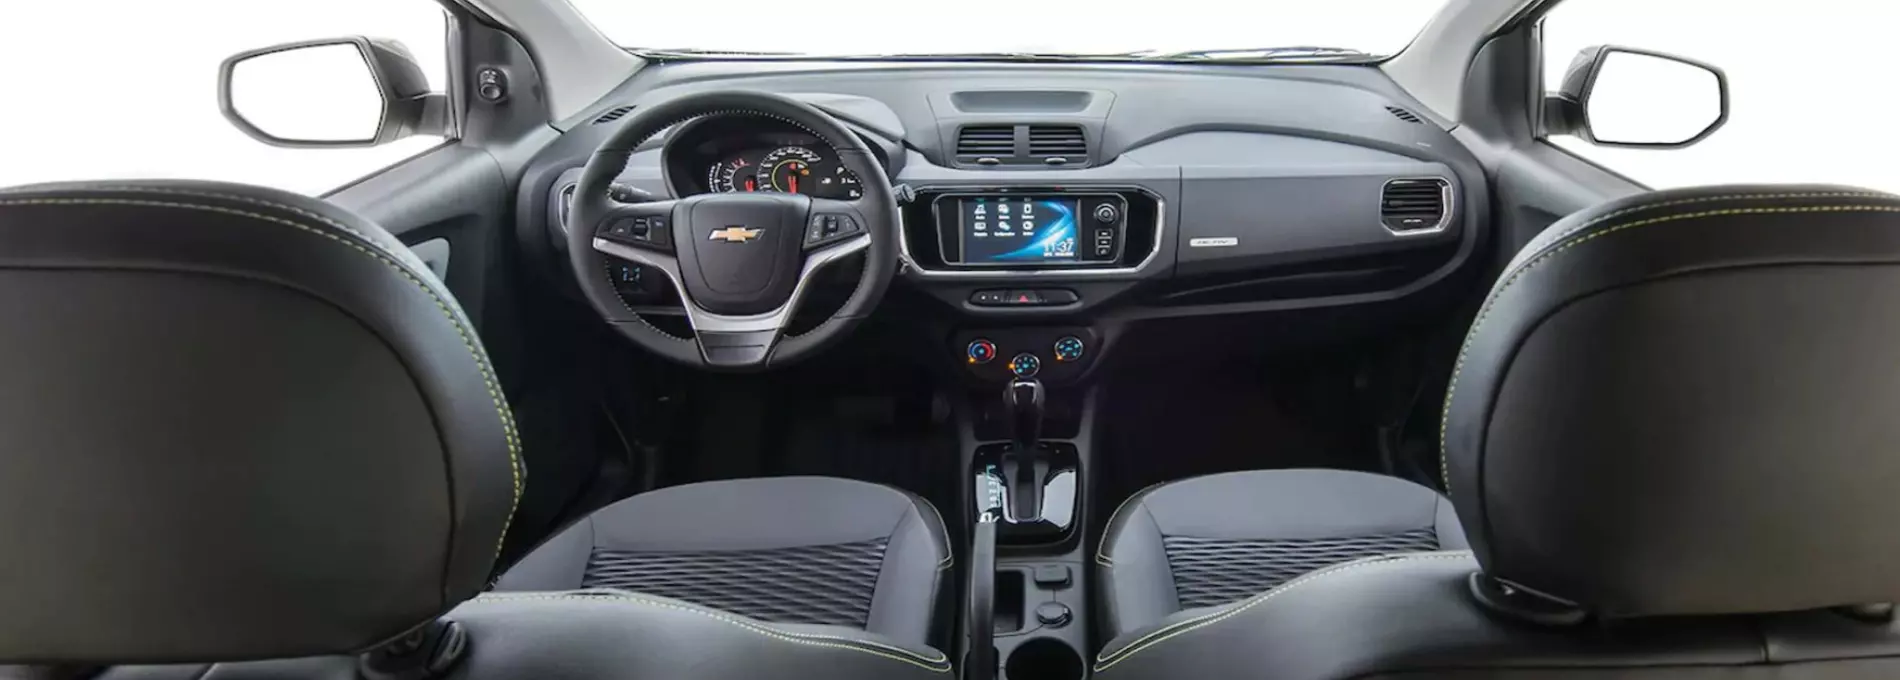 Design interior do Chevrolet Spin Activ 2022